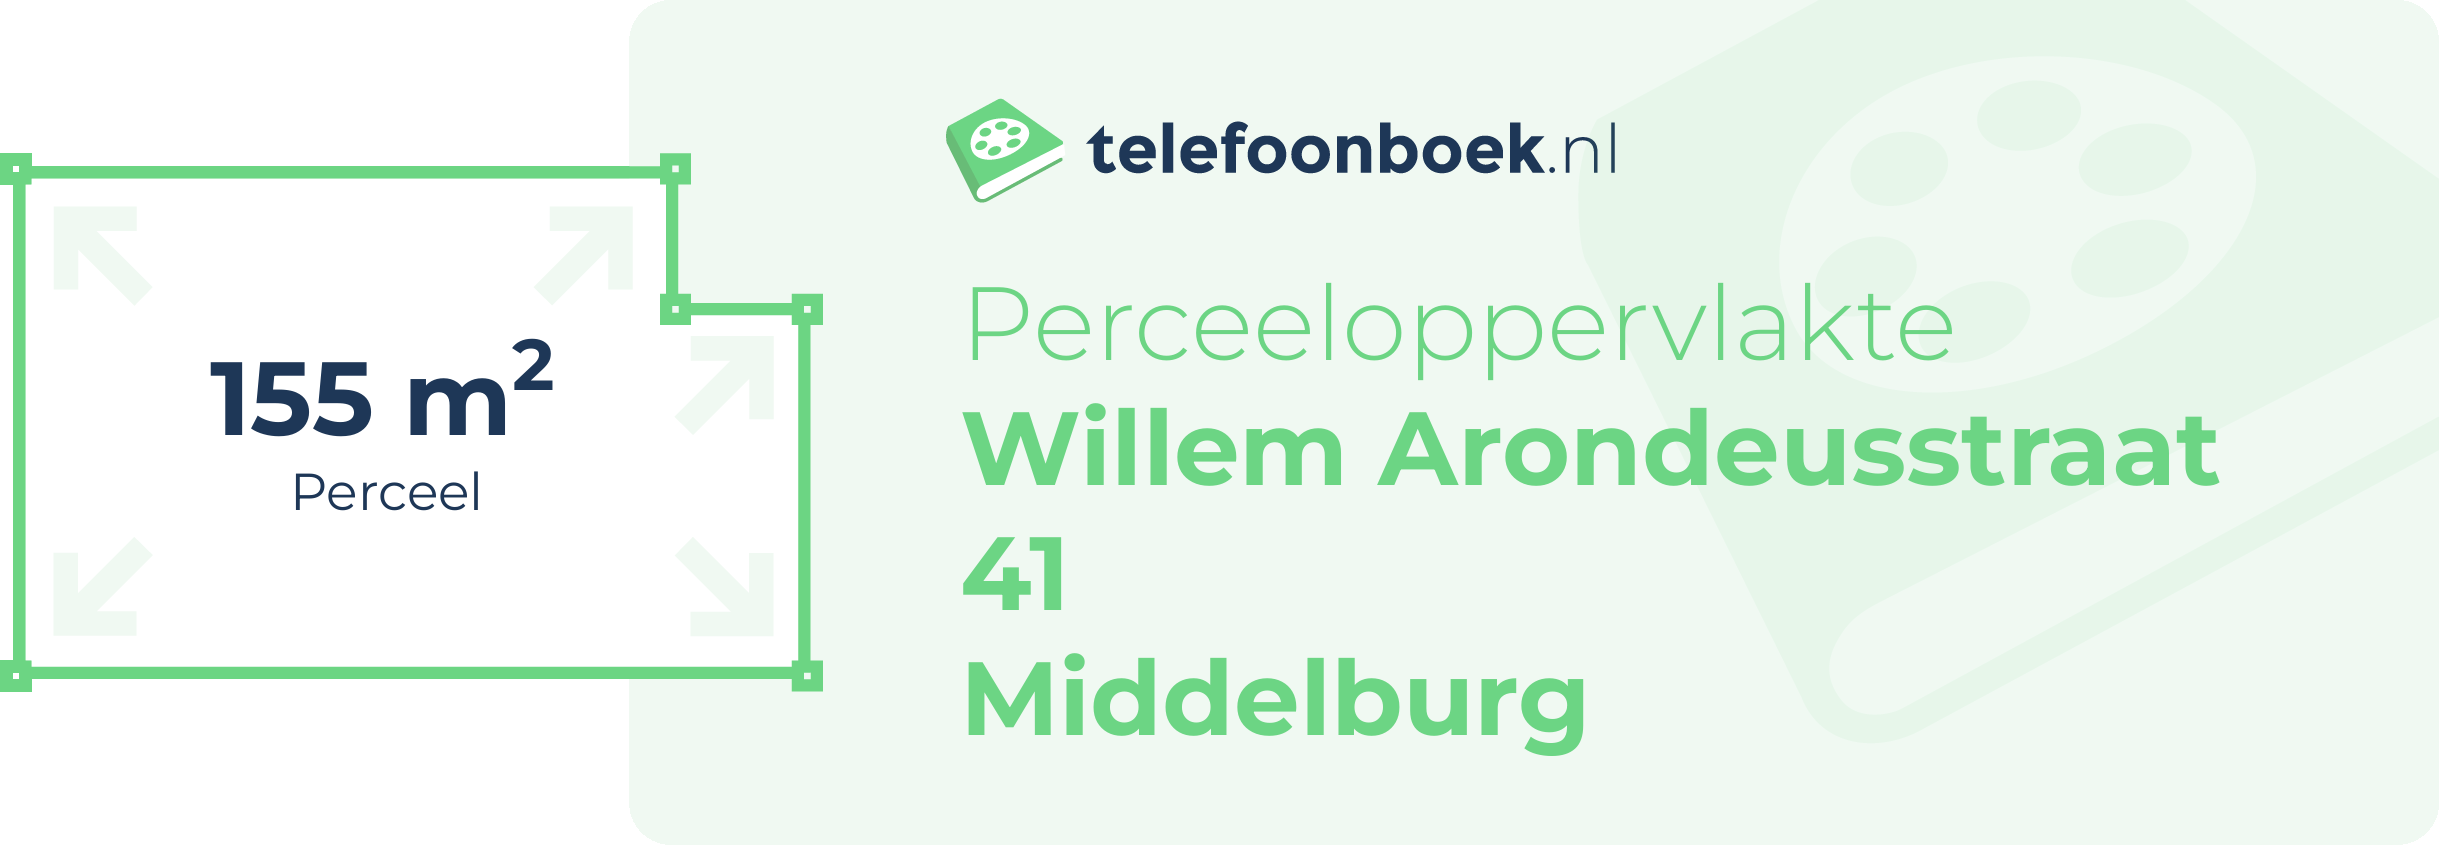 Perceeloppervlakte Willem Arondeusstraat 41 Middelburg